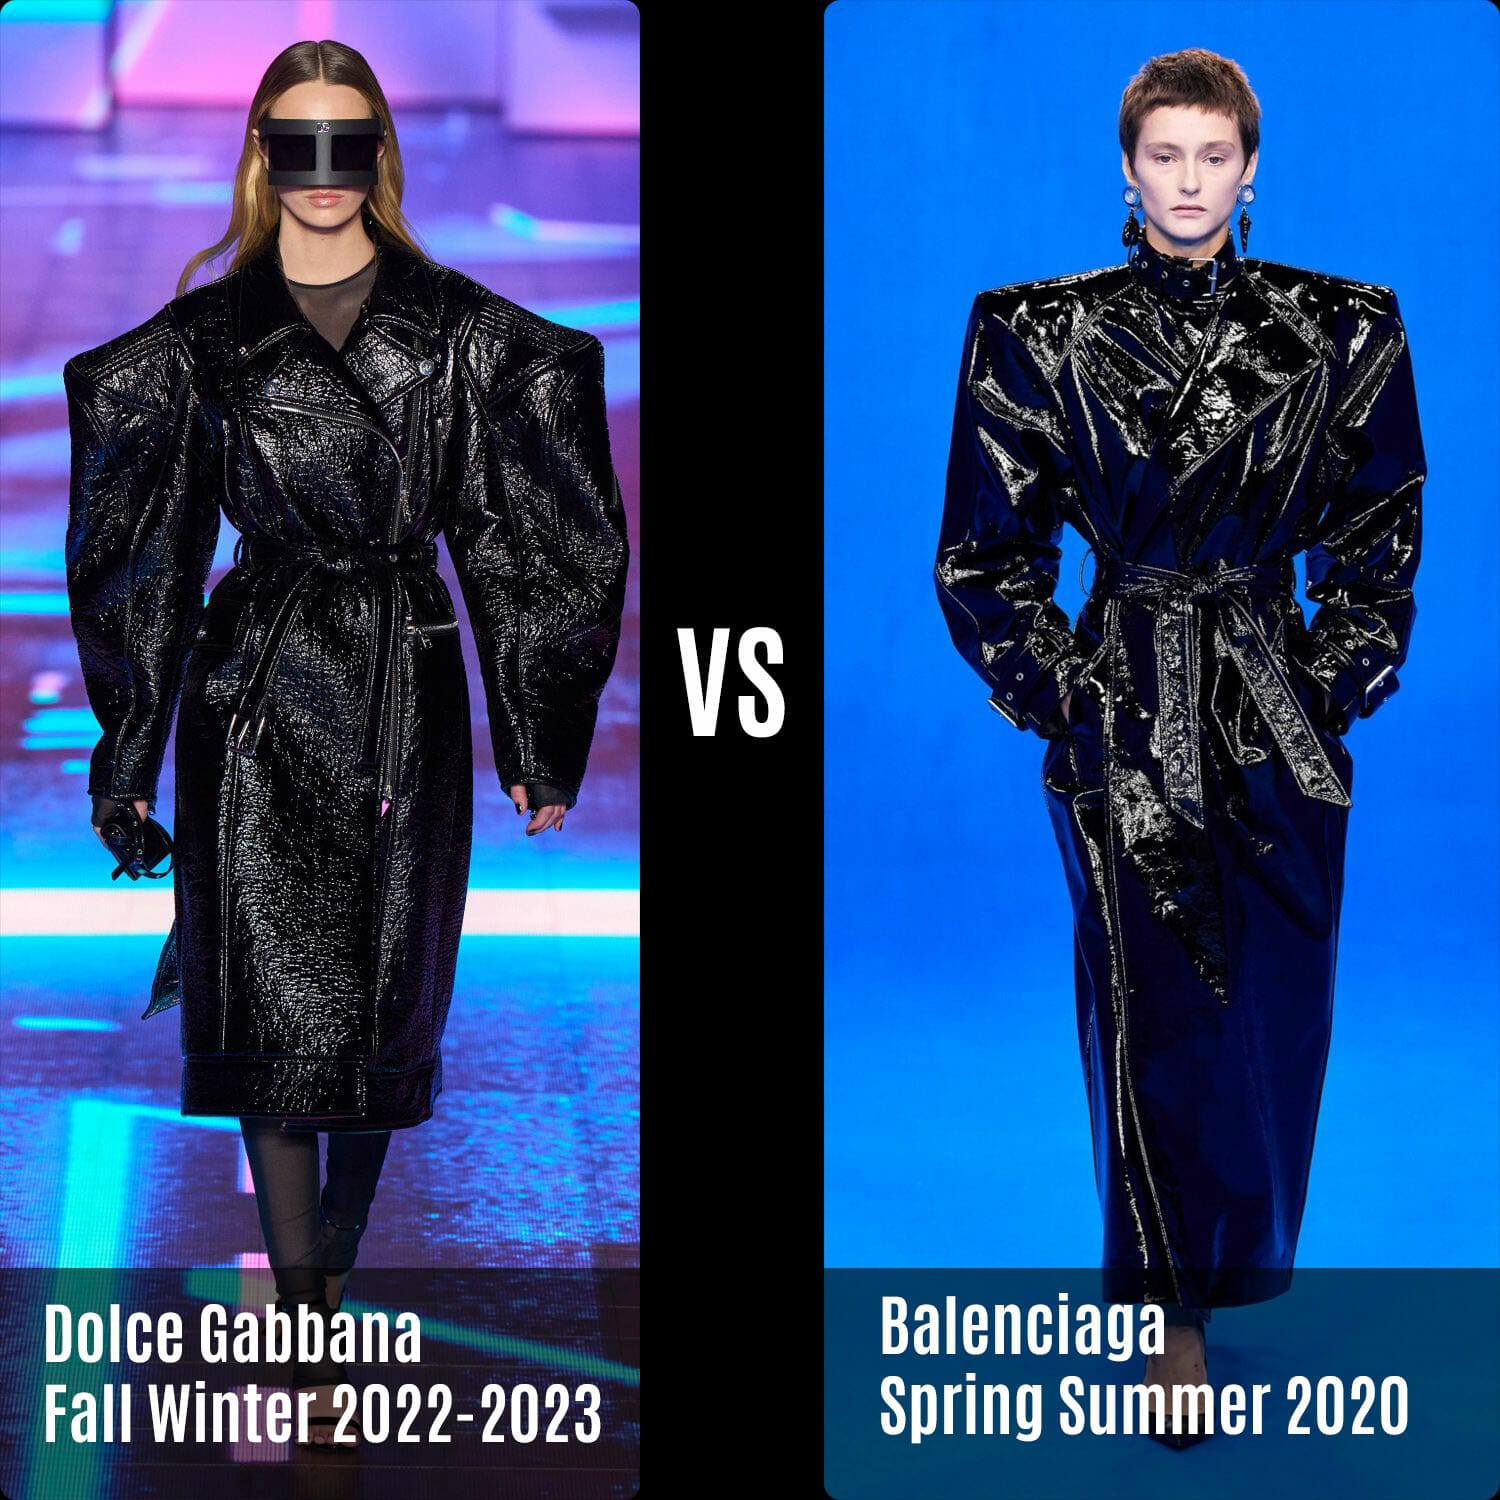 Dolce Gabbana Fall Winter 2022-2023 vs Balenciaga Spring Summer 2020